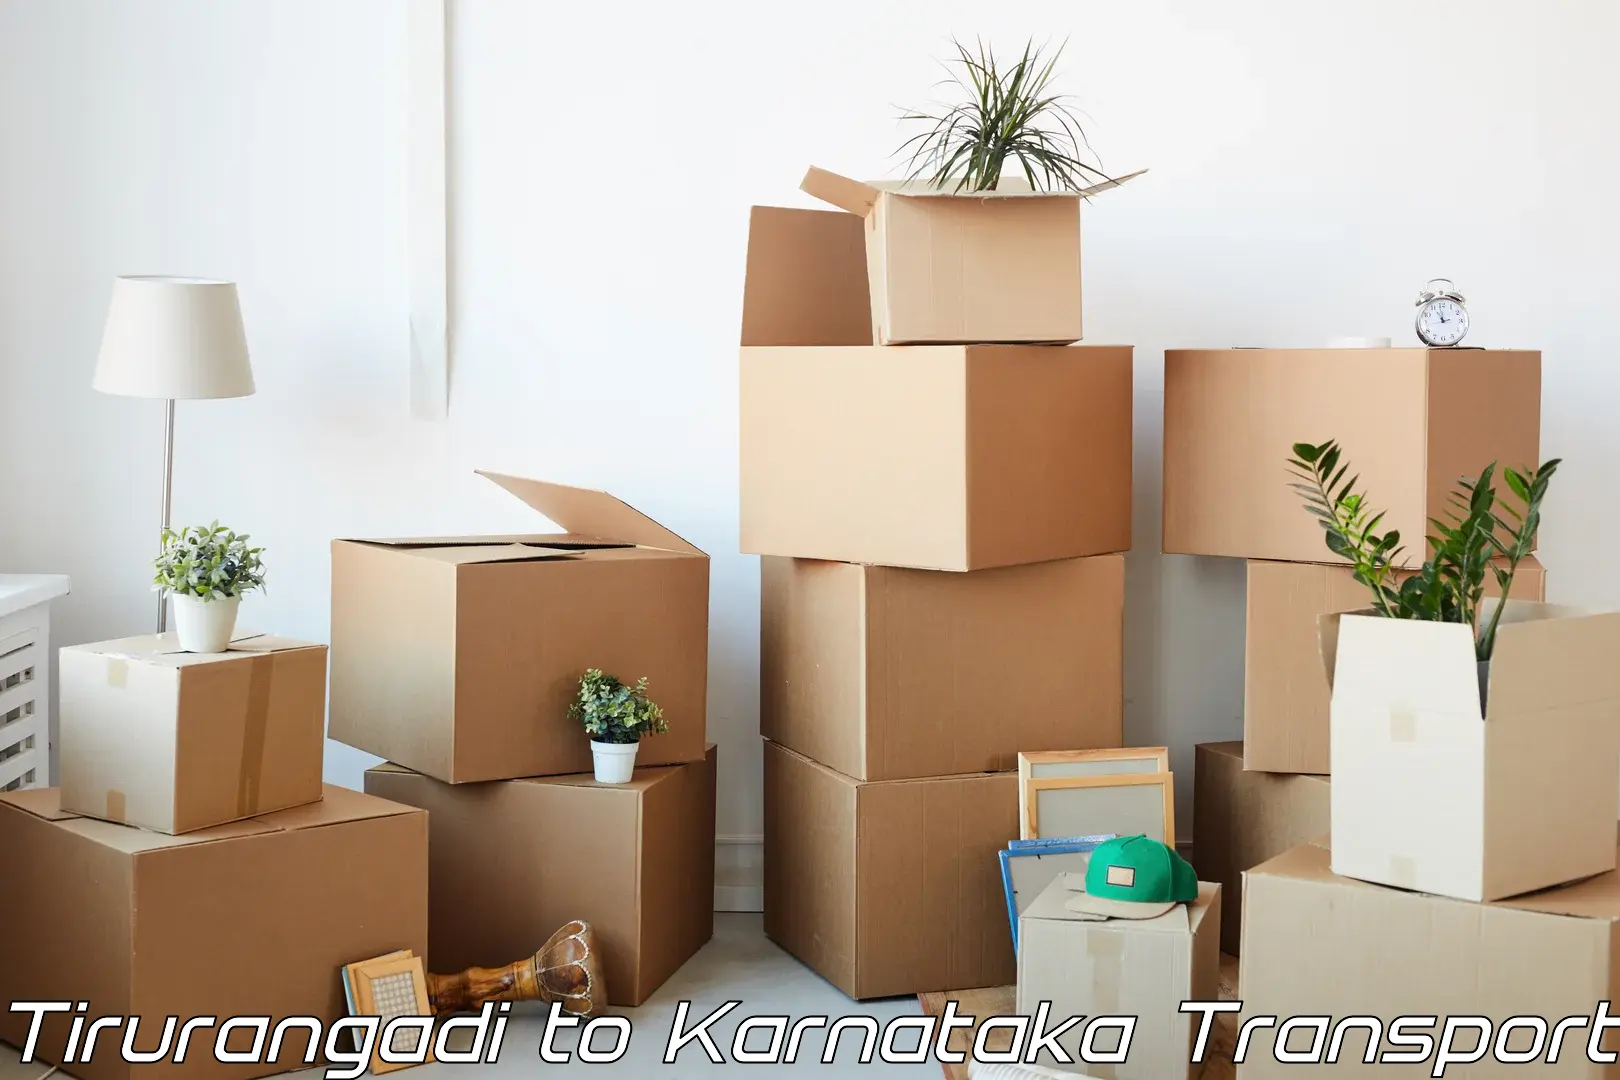 Daily parcel service transport Tirurangadi to Karnataka